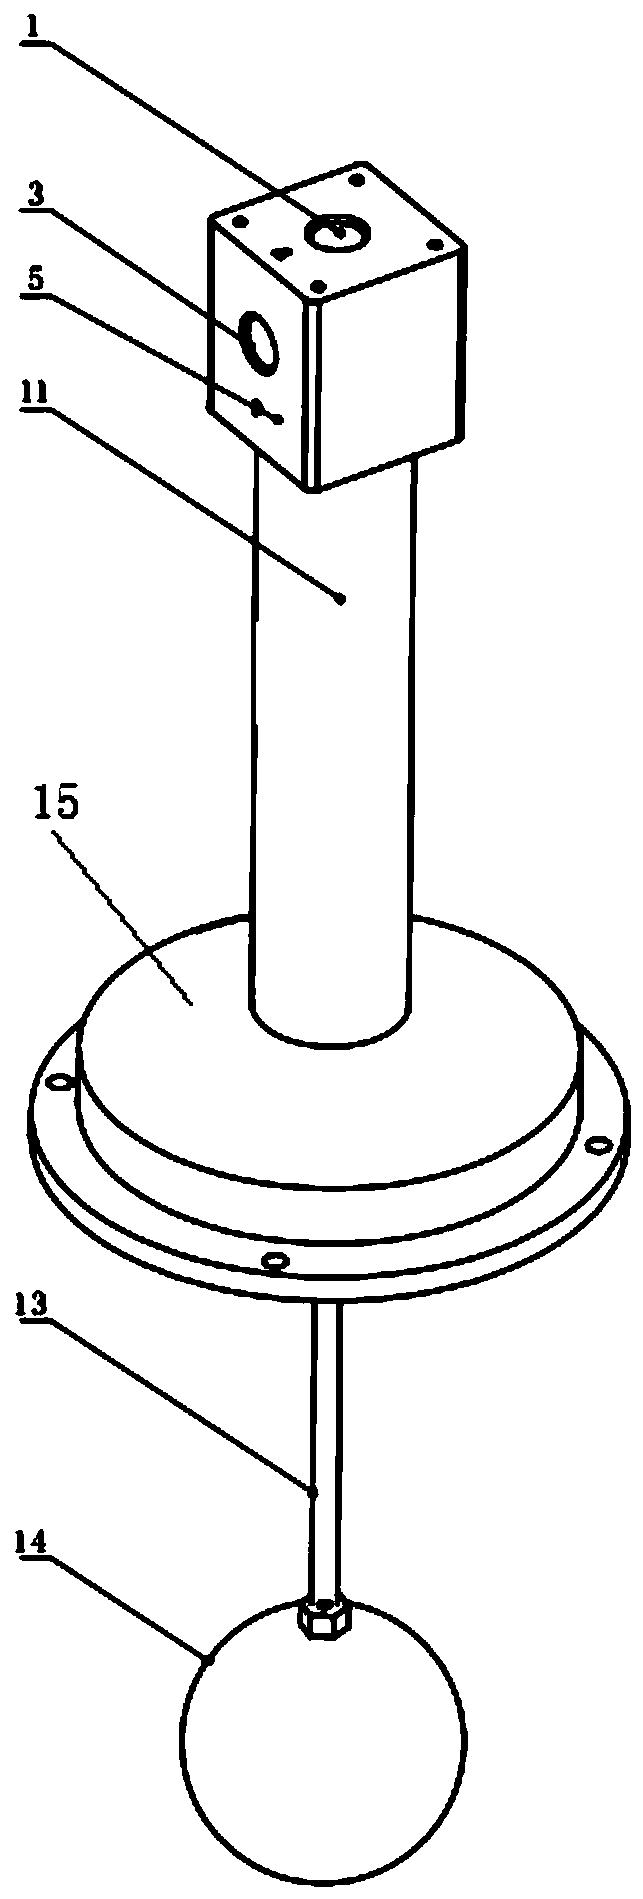 Mechanical vacuum liquid level control valve